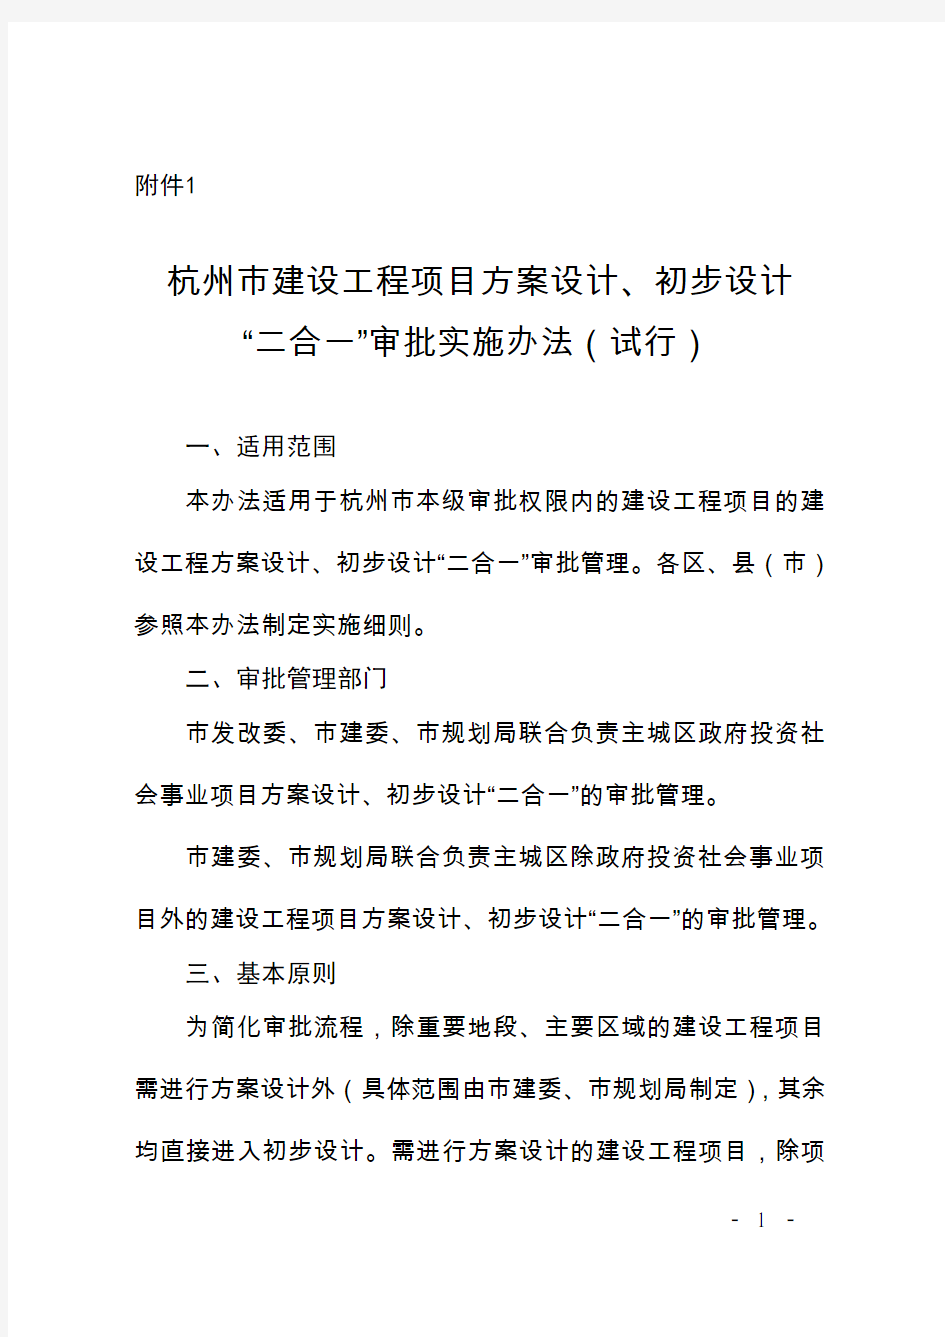 《杭州市建设工程项目方案设计、初步设计“二合一”审批实施办法(试行)